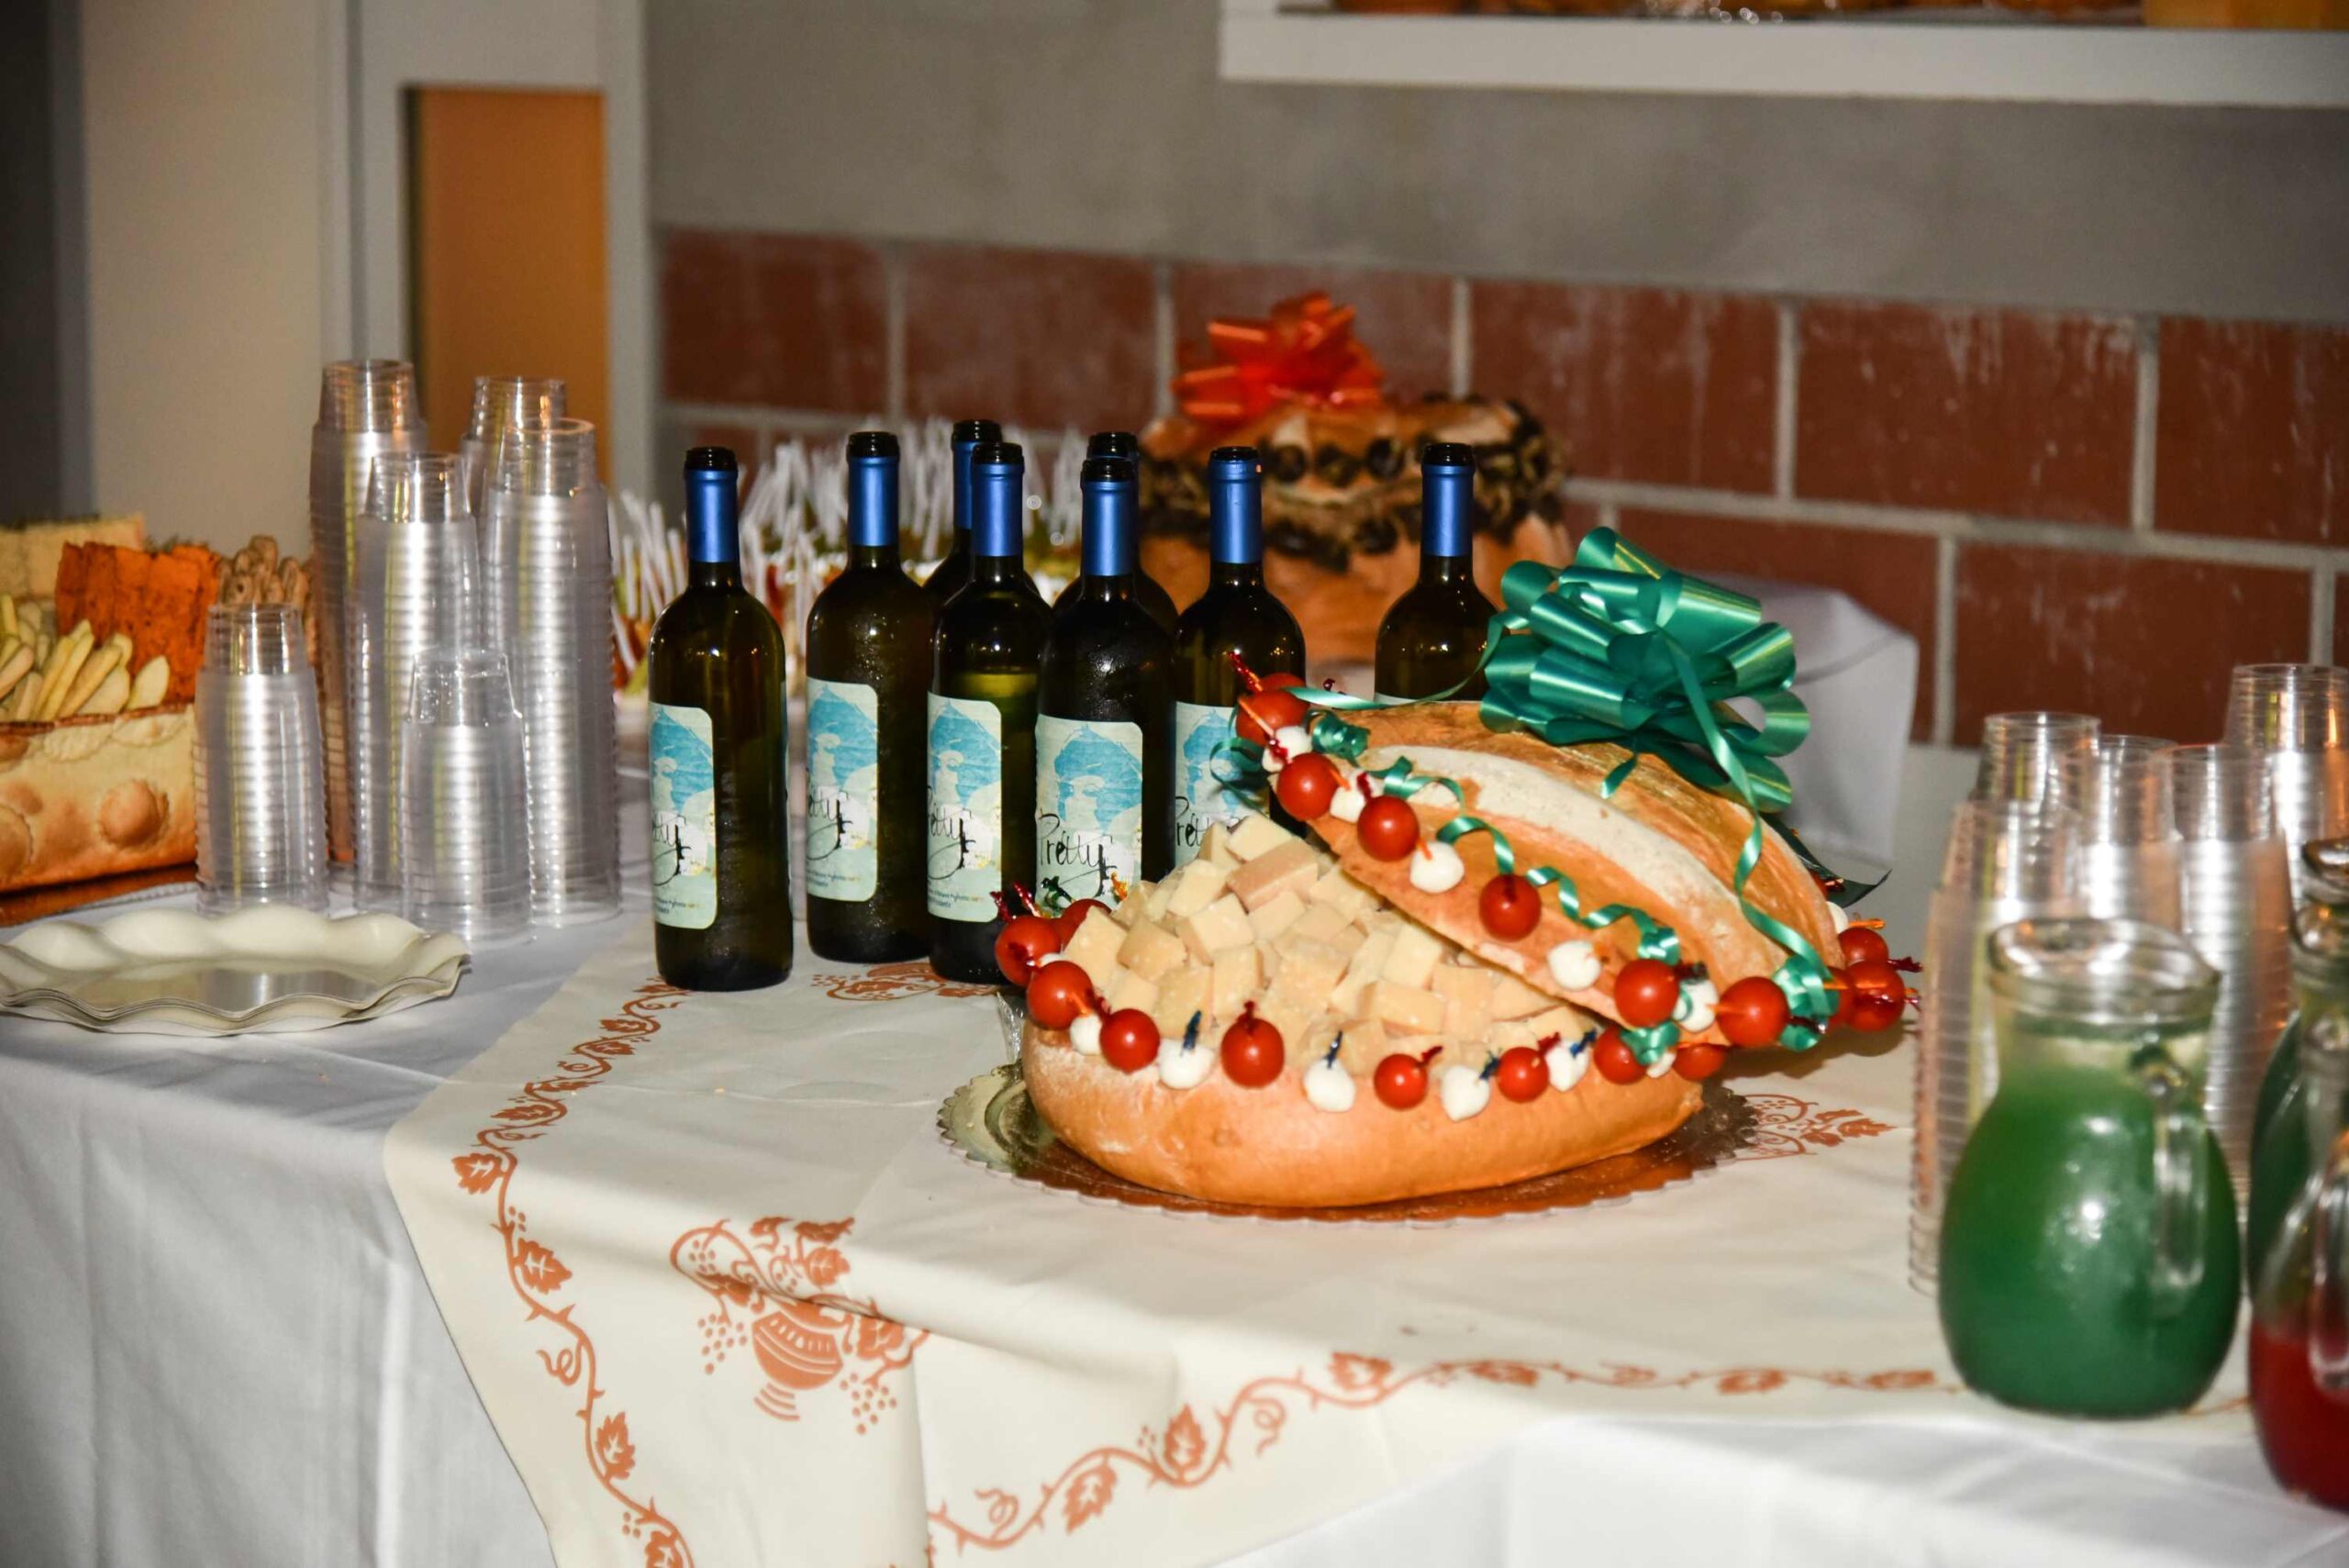 catering, Ravenna. panino prosciutto, senza lattosio, veloce, festa ,sfiziosità, festa a tema